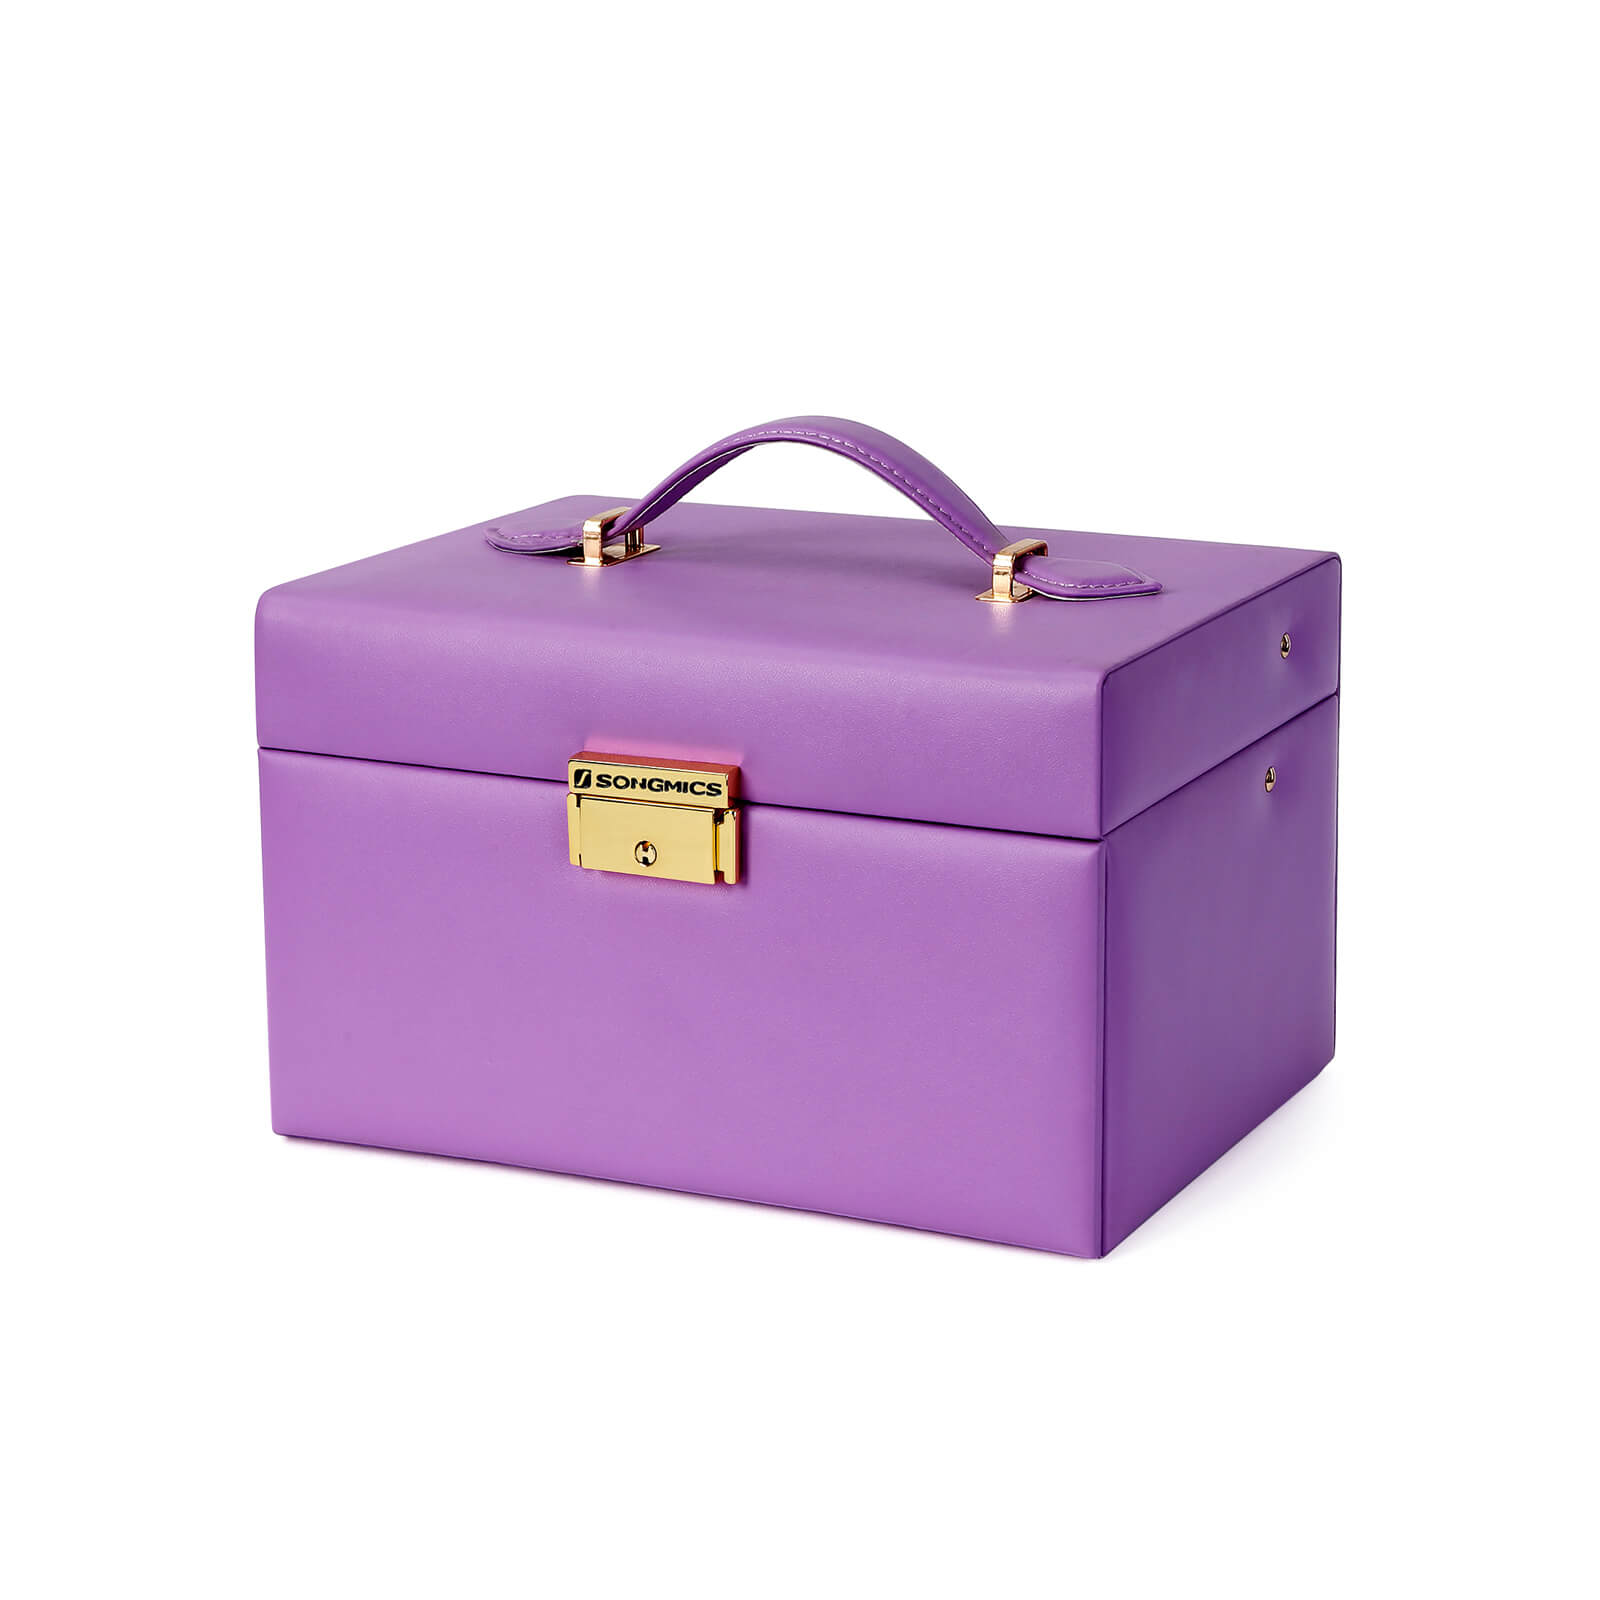 Purple Mirrored Jewelry Box - Jewelry Box | SONGMICS